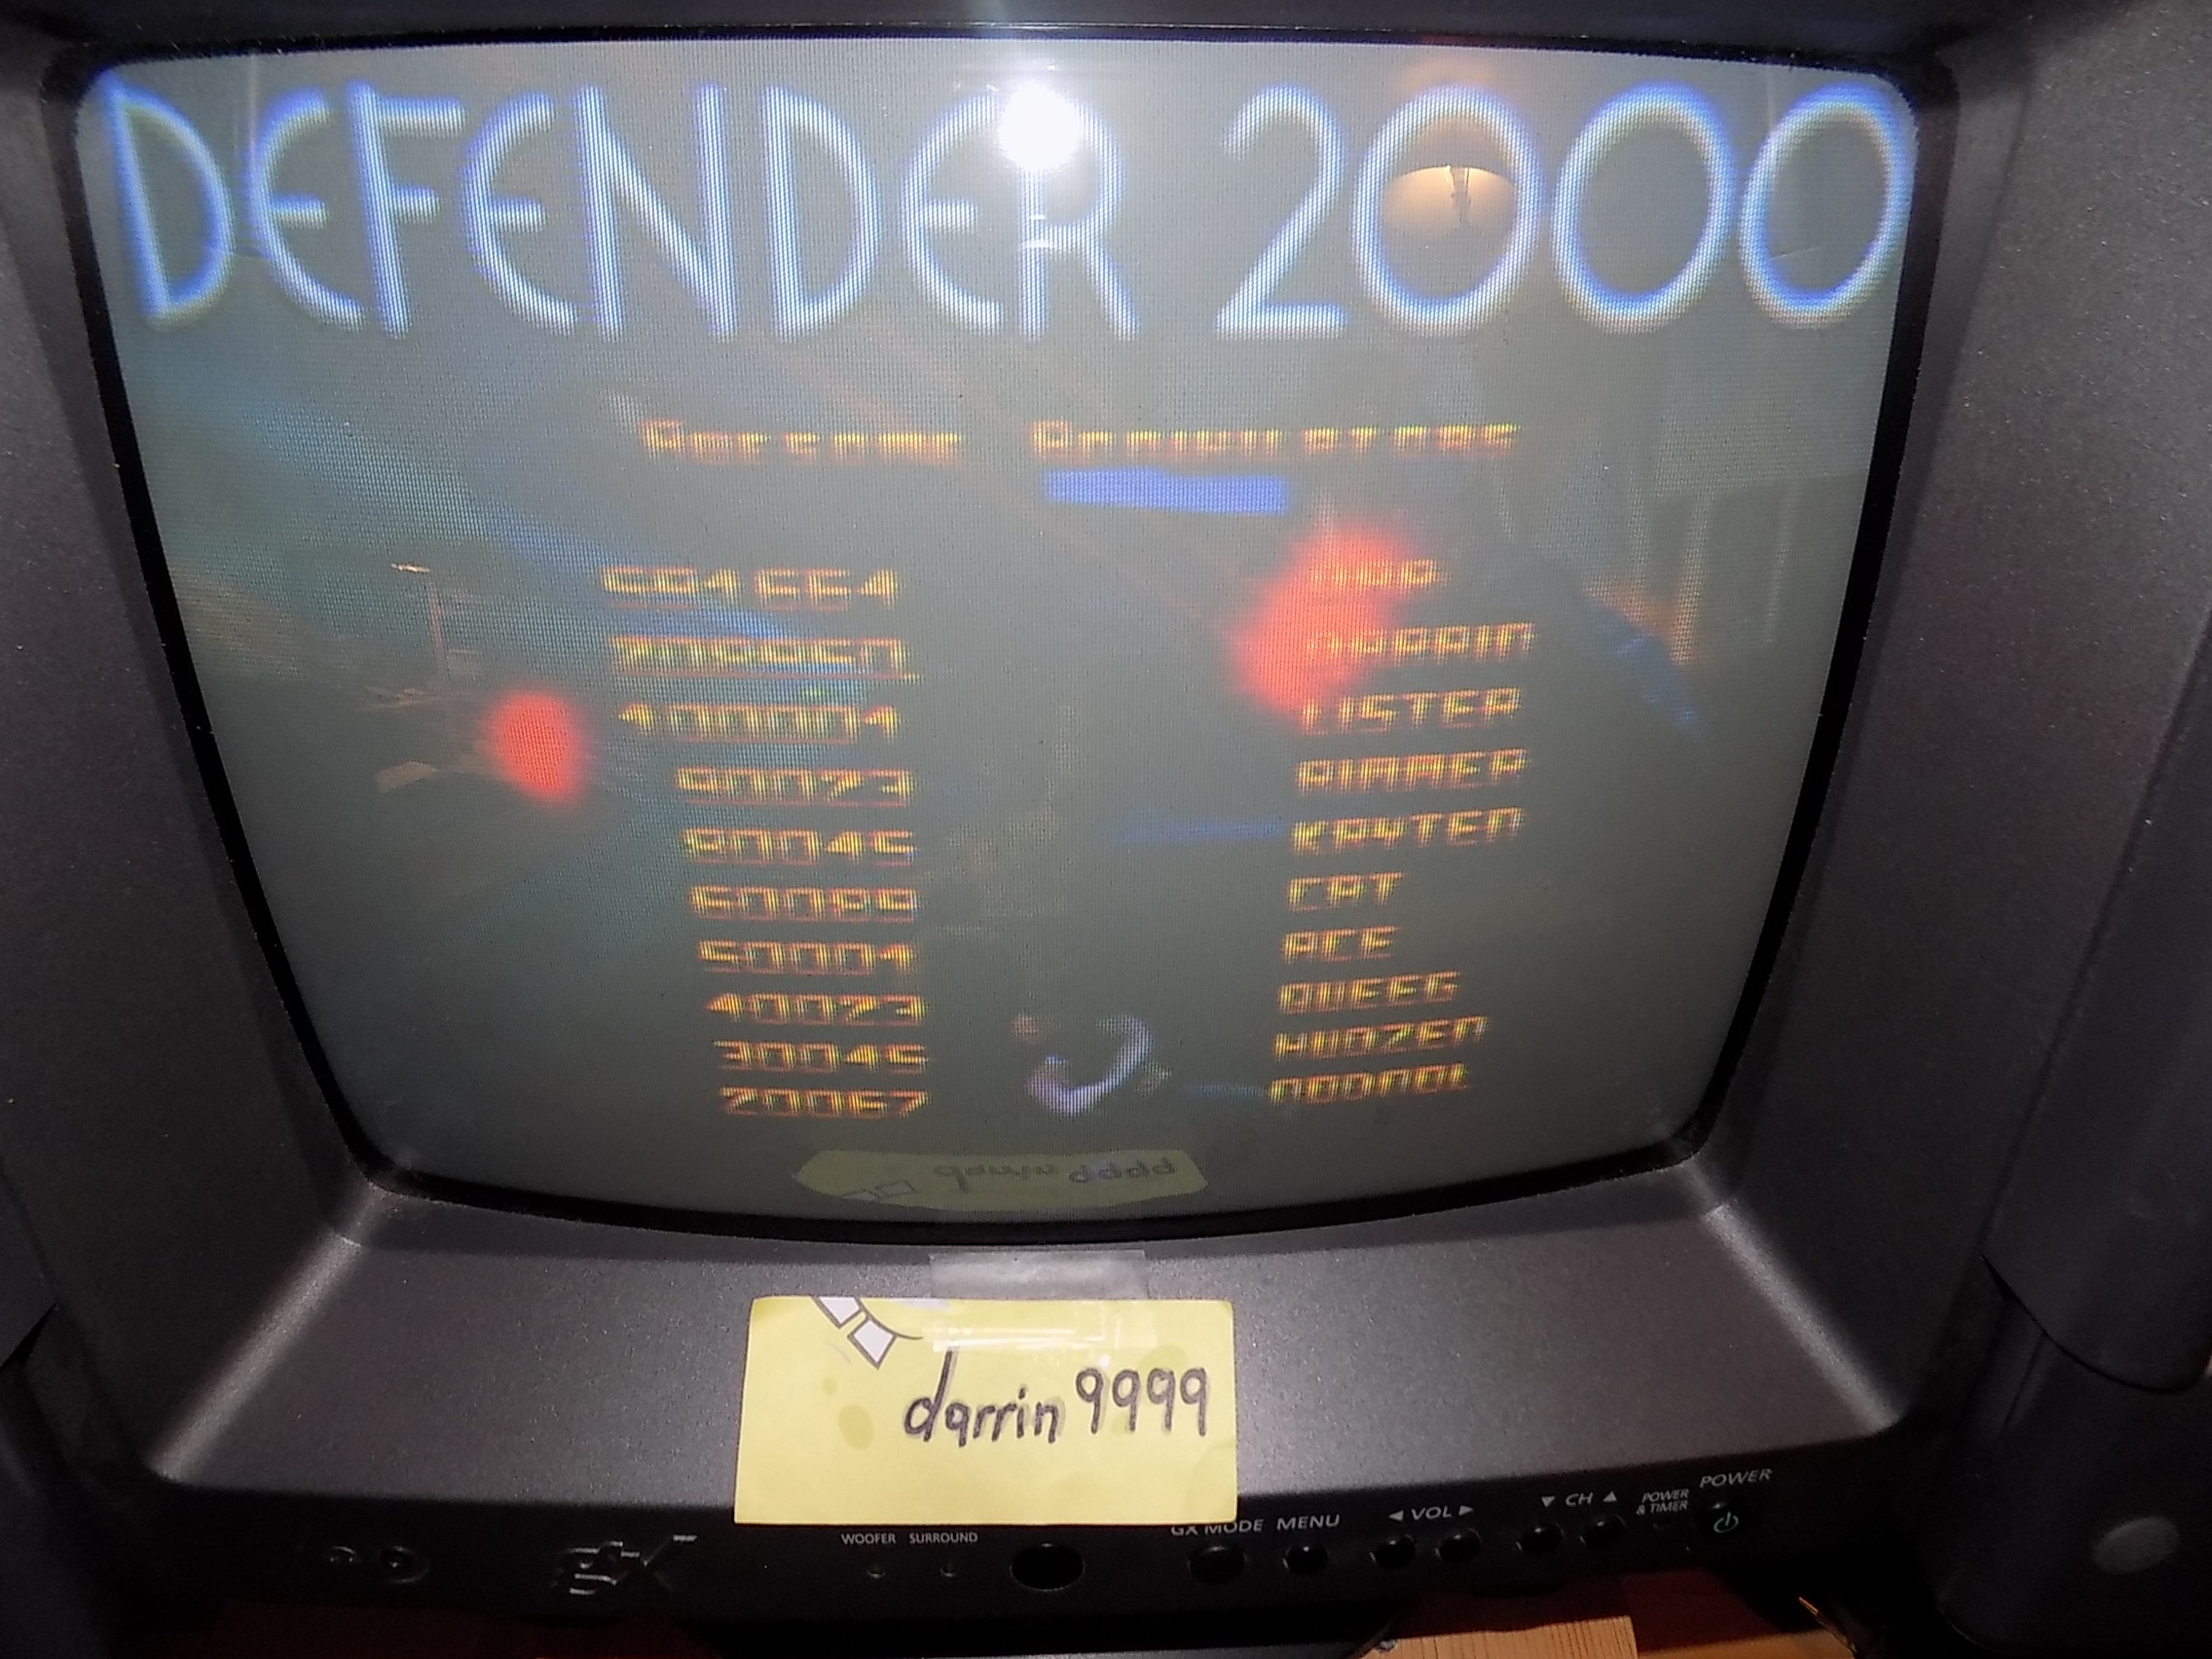 Defender 2000: 2000 Mode 591,664 points